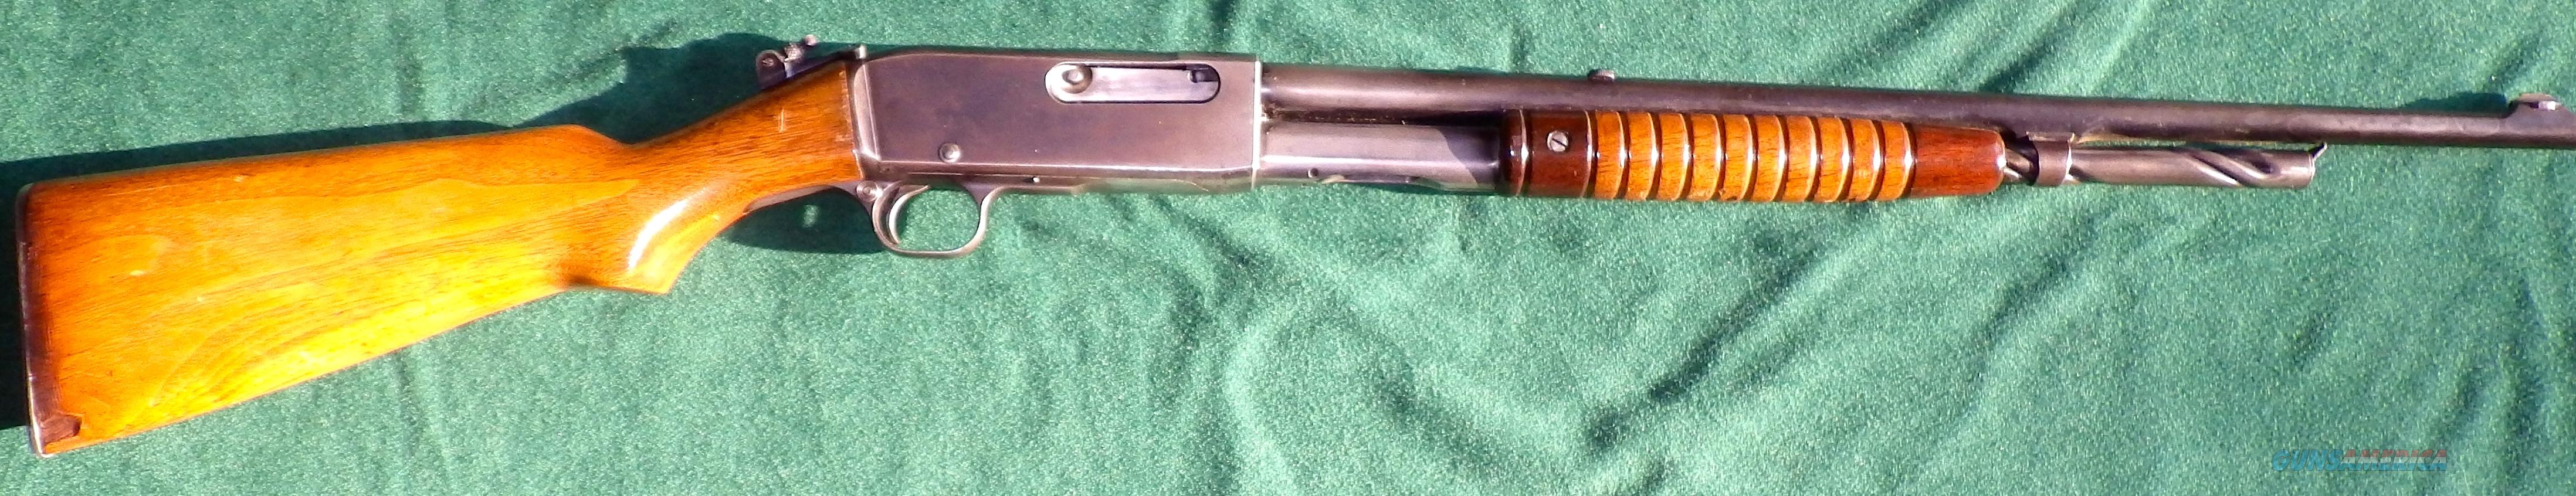 remington model 12 serial number 727975